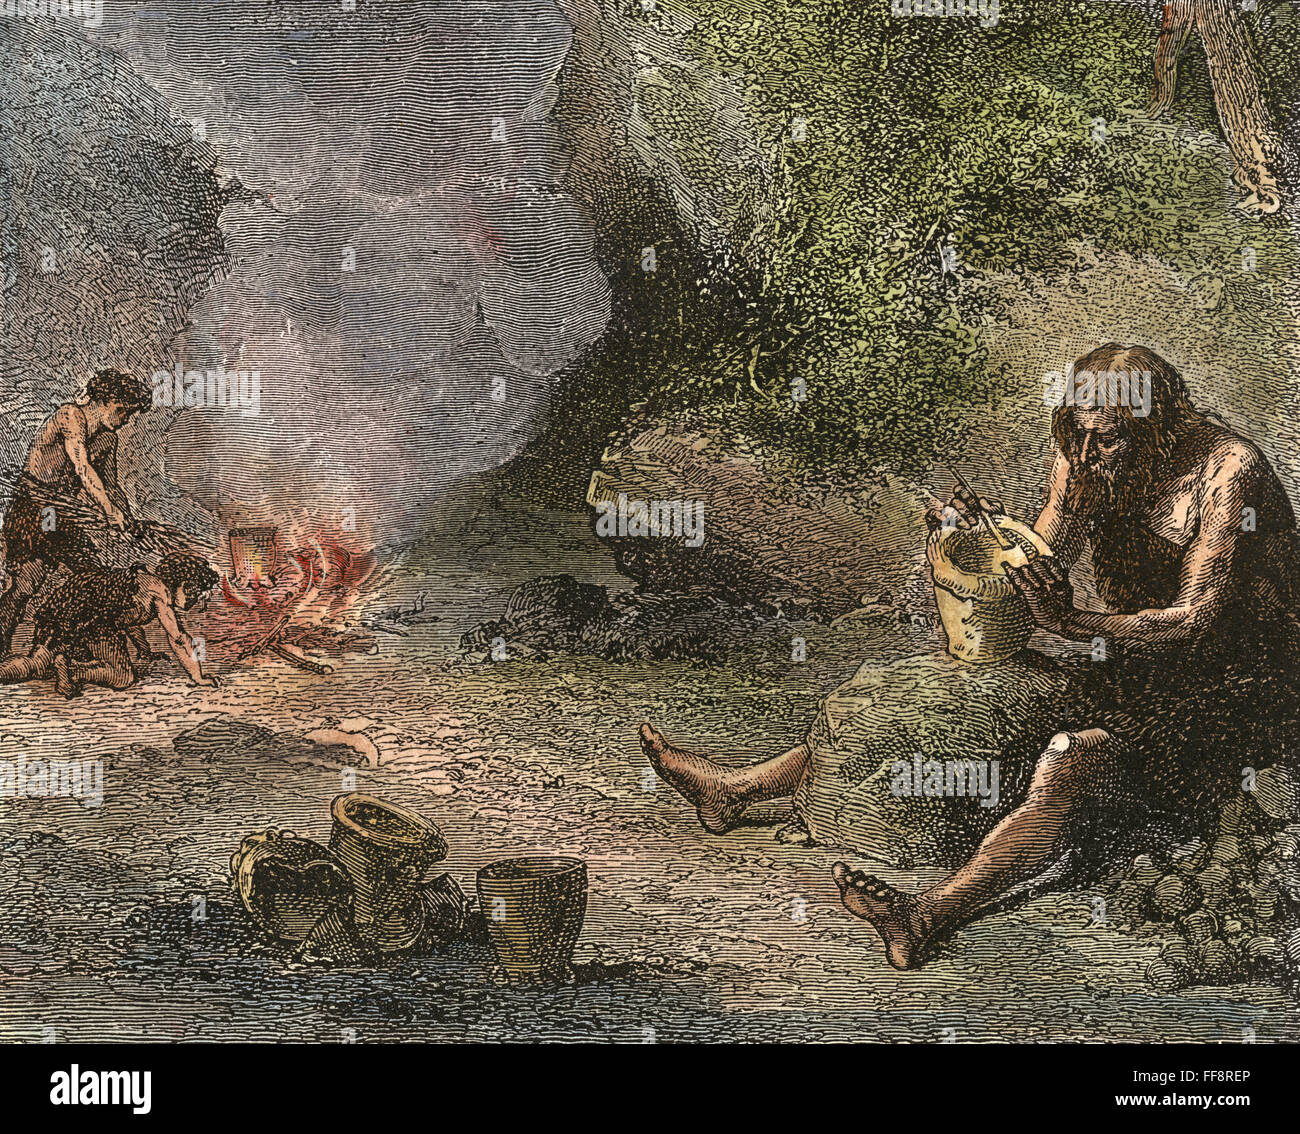 L'homme préhistorique : la poterie. Homme nPrehistoric /la structuration d'une casserole d'argile, gravure, 19e siècle. Banque D'Images